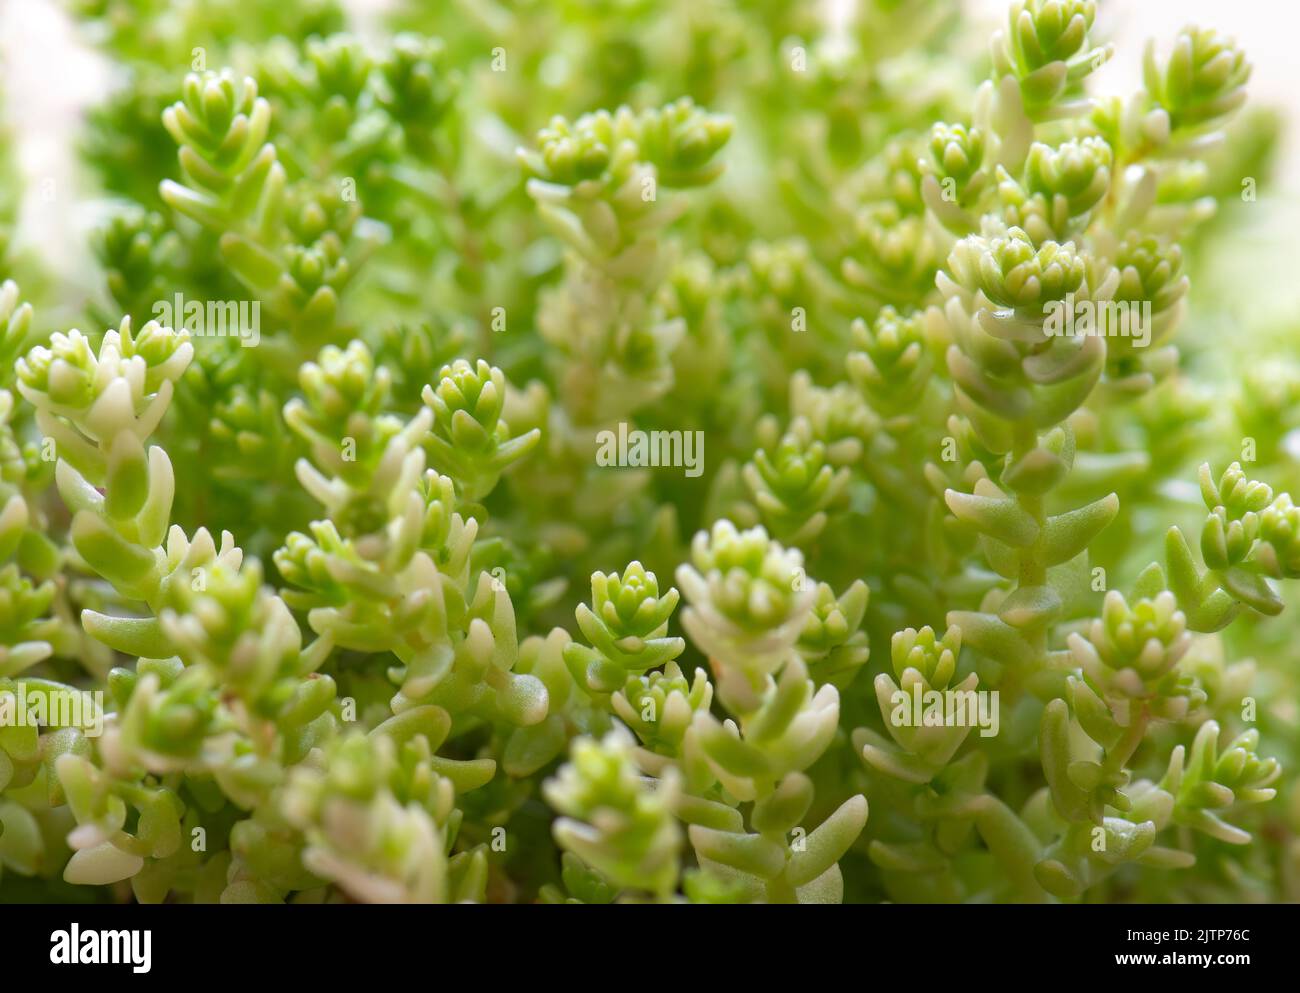 Gros plan de la plante alpine de Sedum. Variété 'Golden Moss Stonecrop.' Succulent utilisé pour les rockeries, alpines et la couverture de sol. Banque D'Images